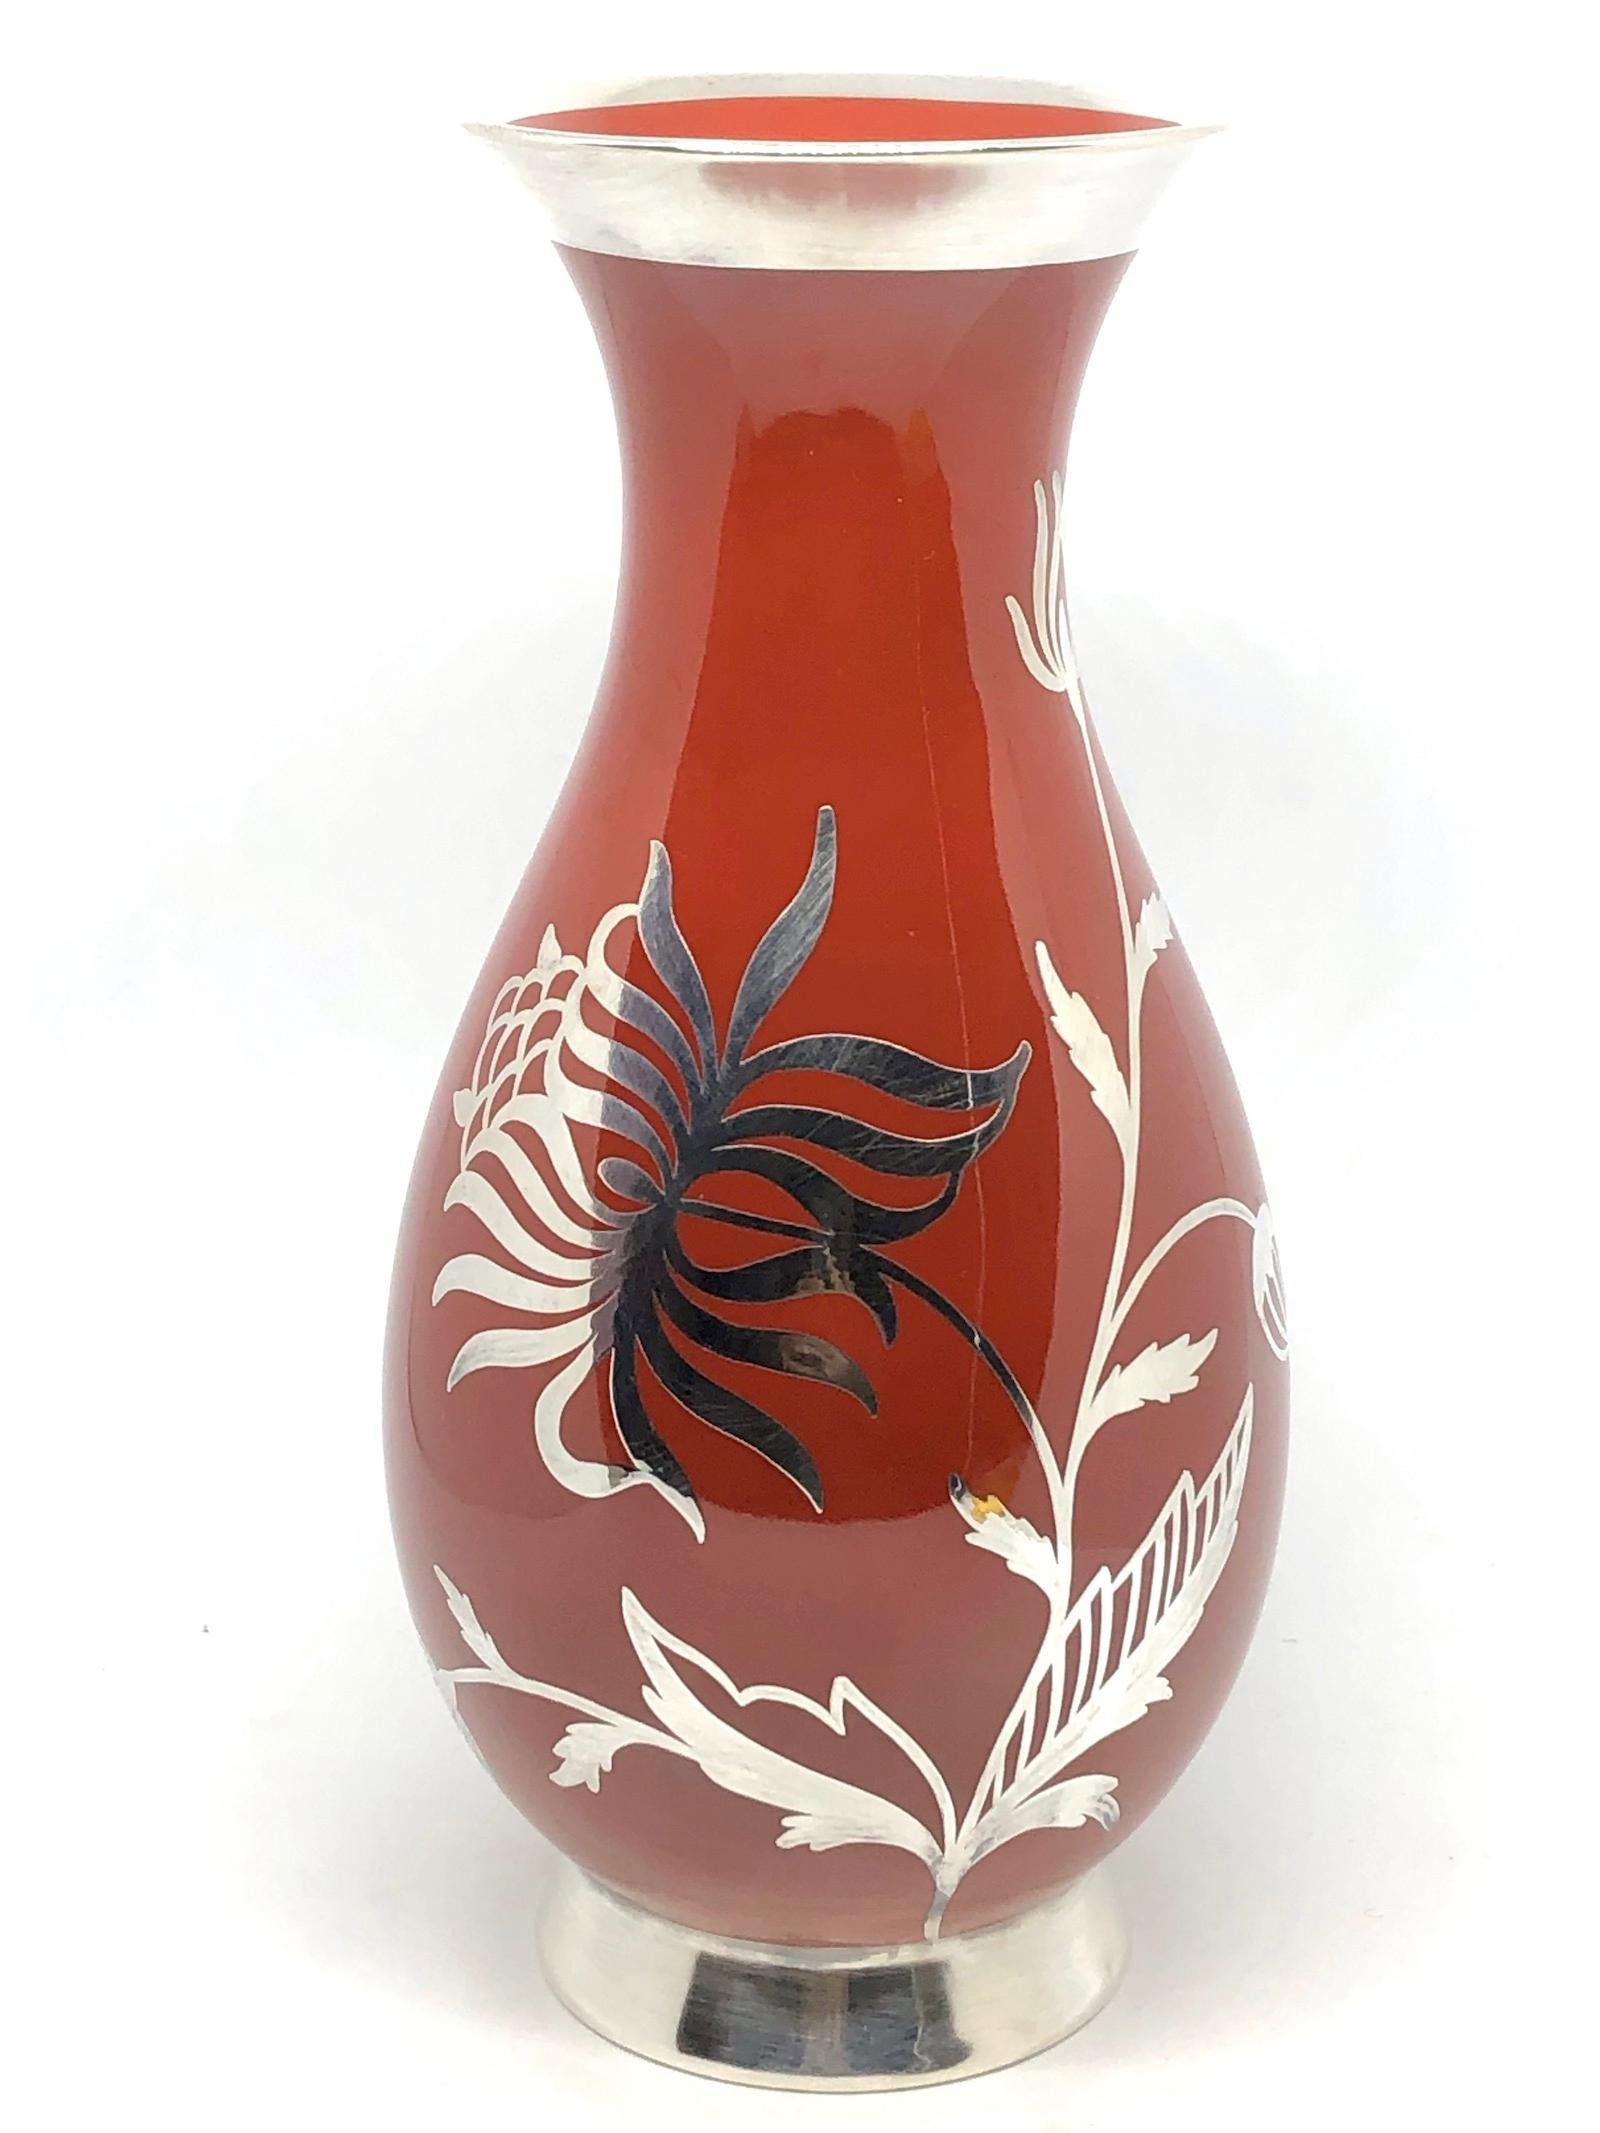 Ein erstaunliches Porzellan Porzellan Studio Kunst Keramik Vase in Deutschland gemacht, von Fürstenberg, ca. 1930er Jahre oder älter. Die Vase ist in sehr gutem Zustand, ohne Chips, Risse oder Flohbisse. Signiert wie auf dem Bild zu sehen.